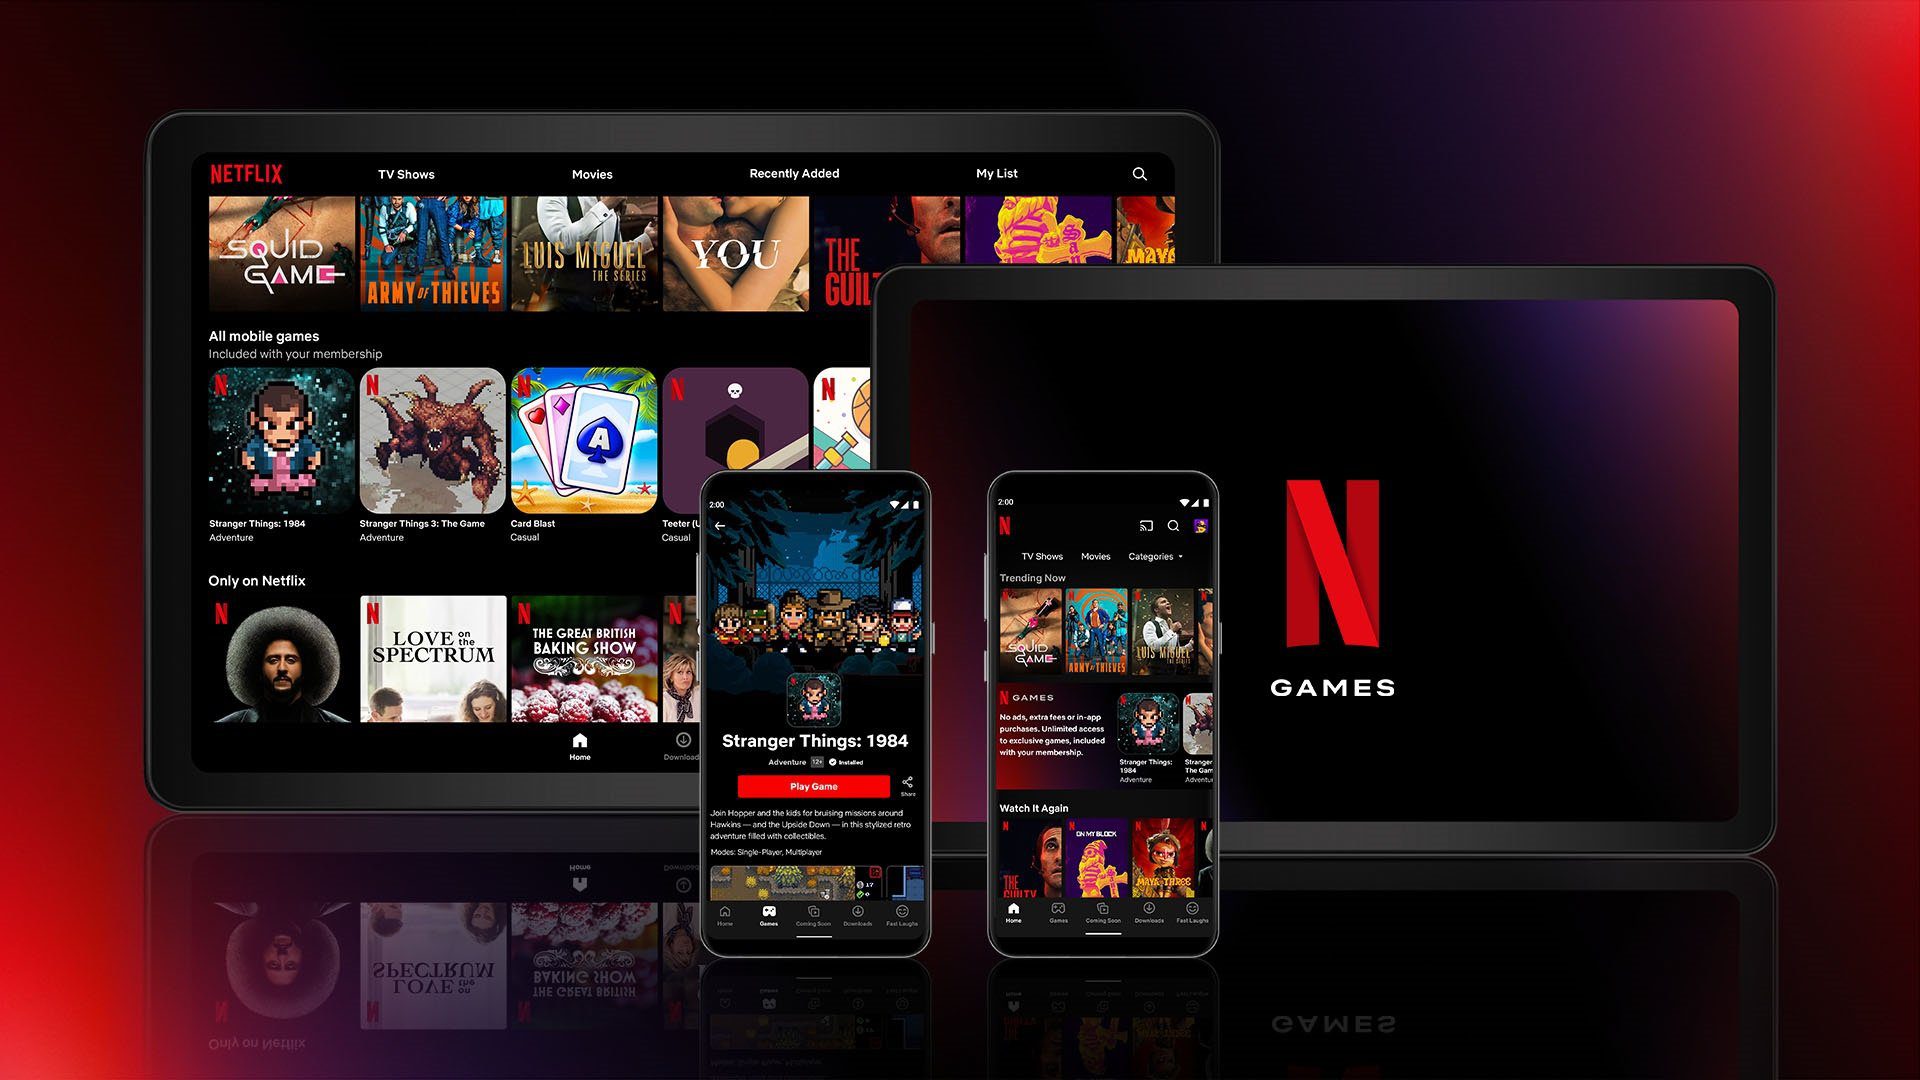 Netflix-Spiele stehen jedem ohne Aufpreis zur Verfügung. schon fast 150